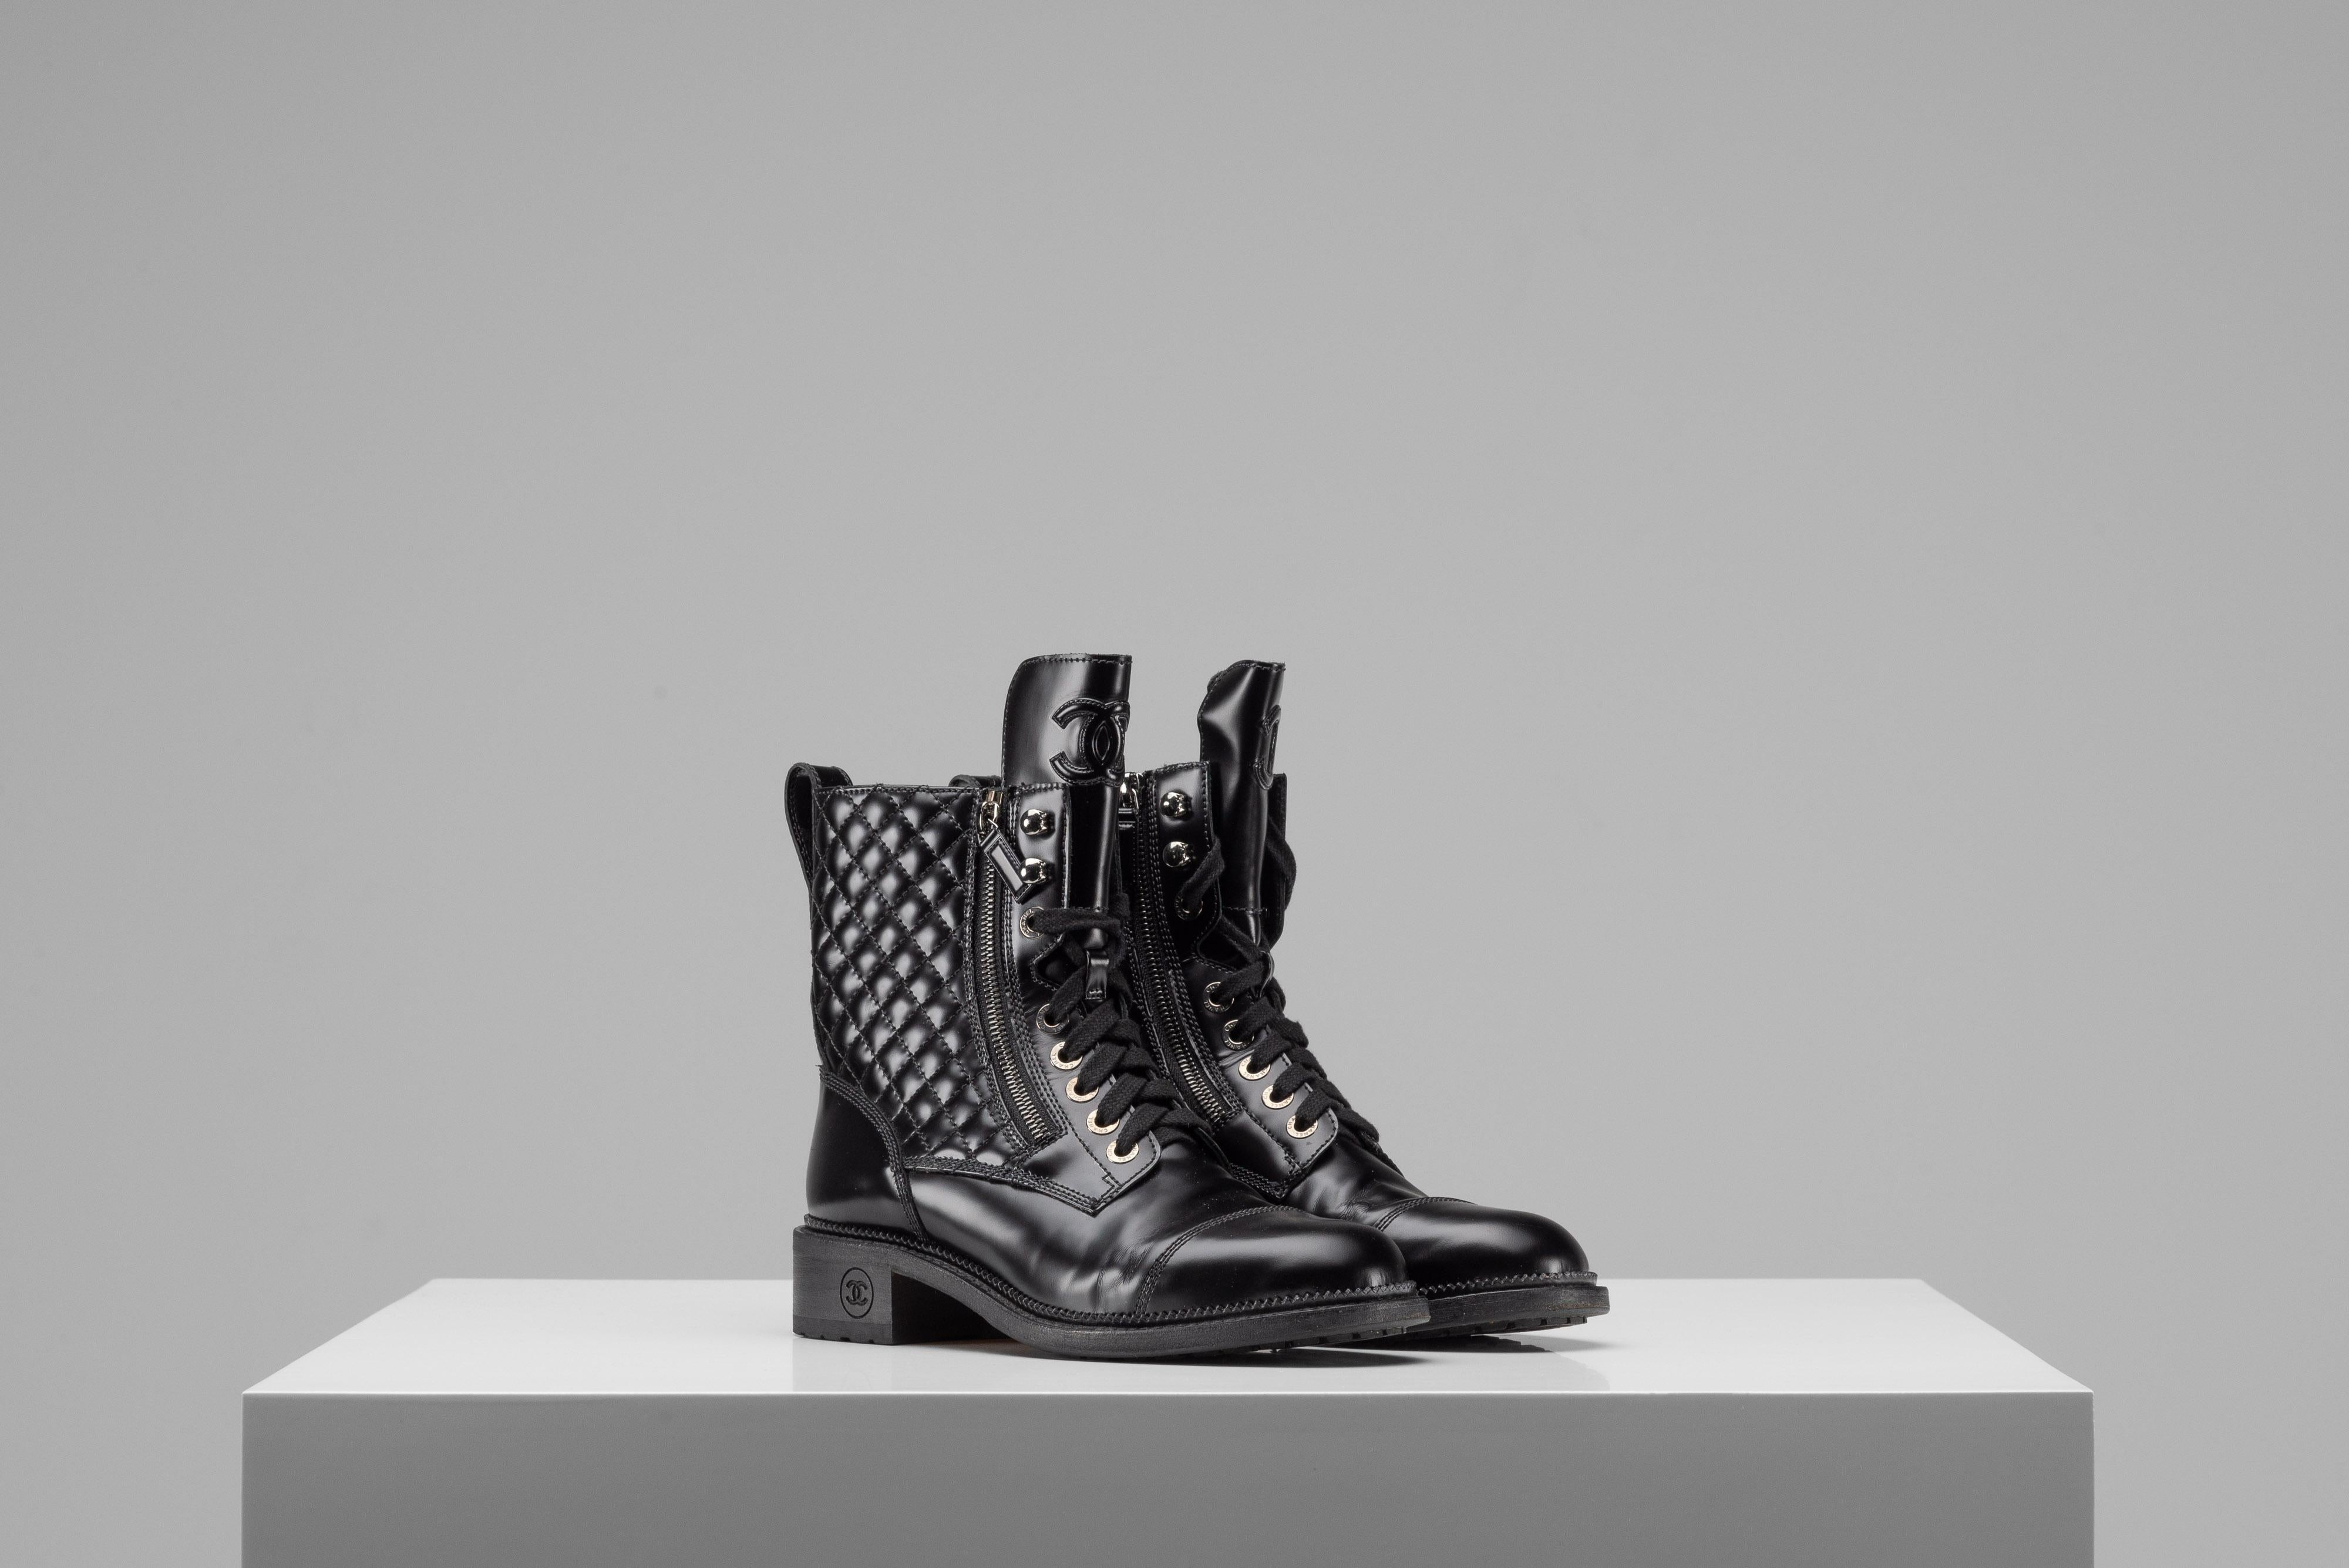 Aus der Kollektion von SAVINETI bieten wir diese schwarzen Chanel Combat Boots an:
-    Marke: Chanel
-    Modell: Kampfstiefel
-    Zustand: Guter Condit 
-    Farbe: Schwarz
-    Extras: Chanel Staubbeutel & Box

Authentizität ist unser zentraler